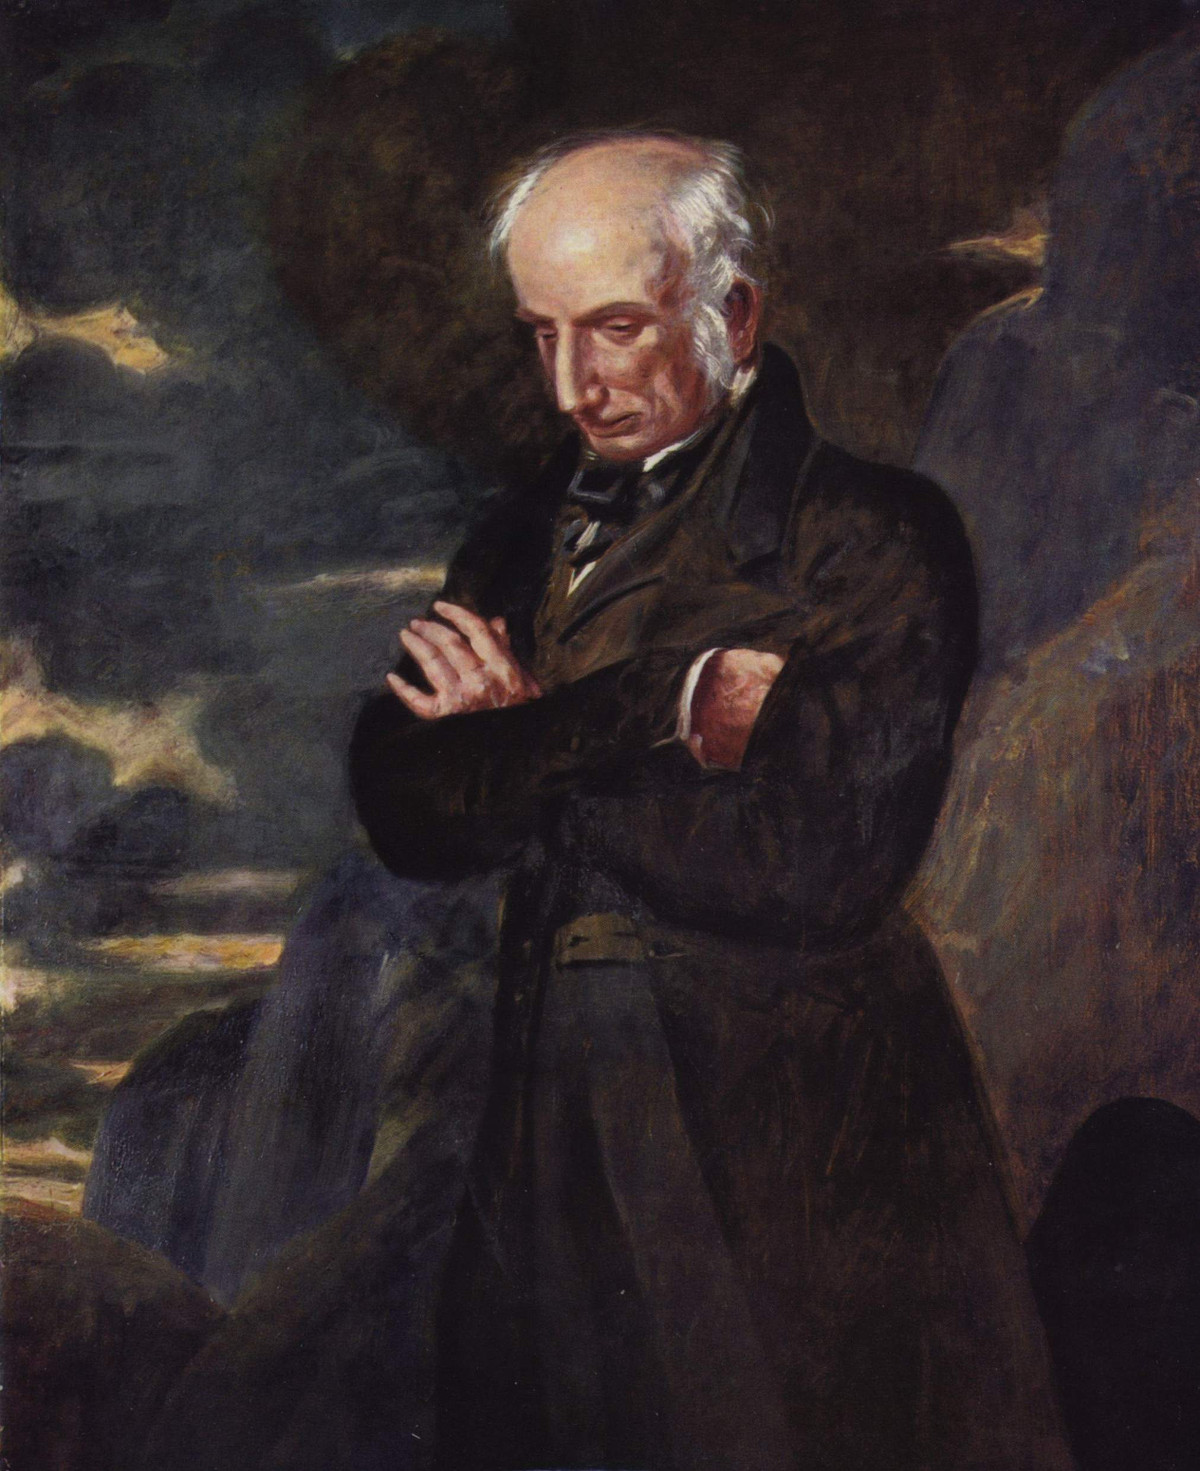 Portrait of William Wordsworth by Benjamin Robert, 1841